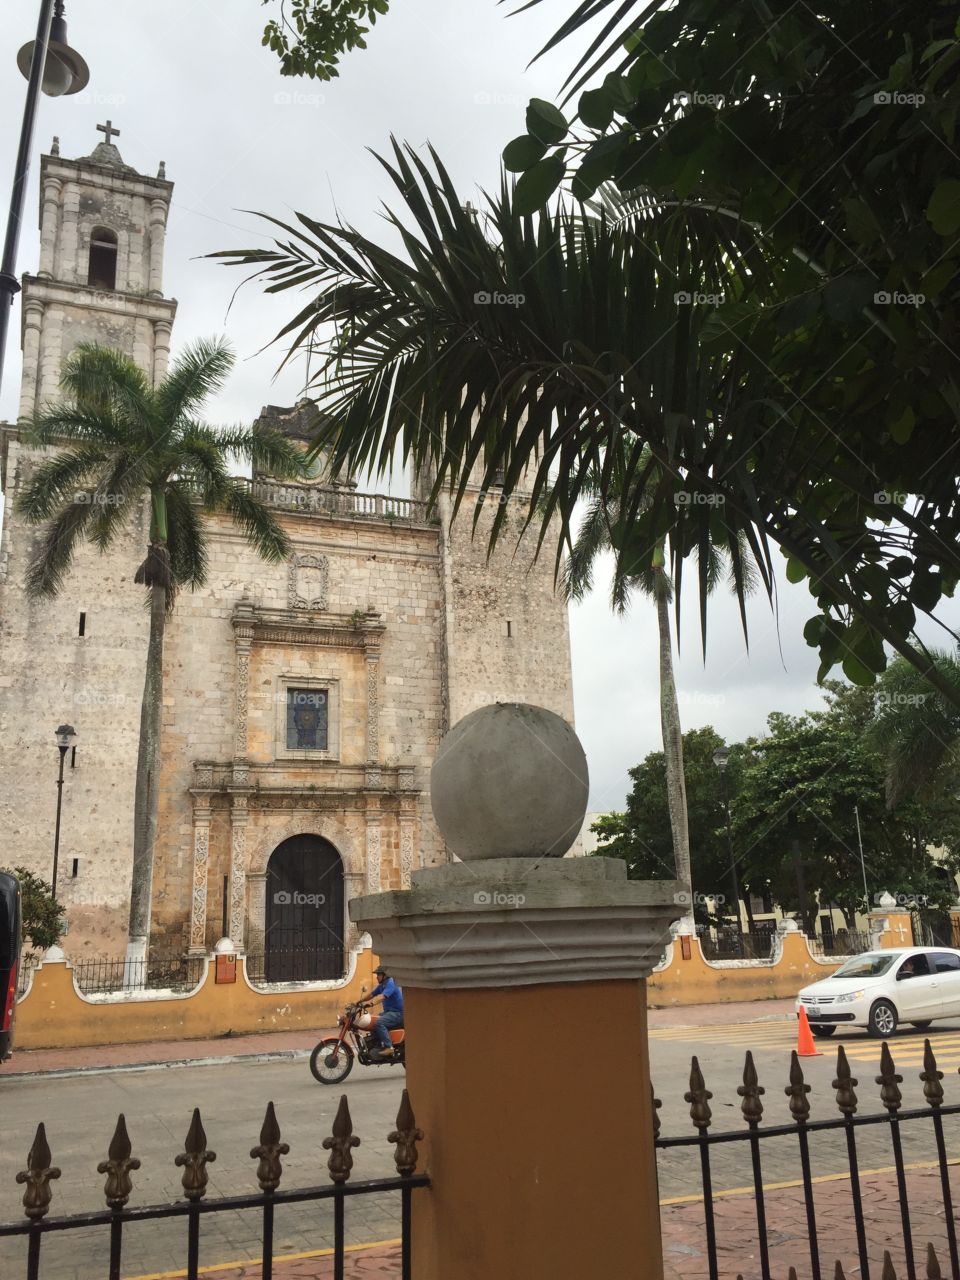 Cathedral of Valladolid Yucatan 